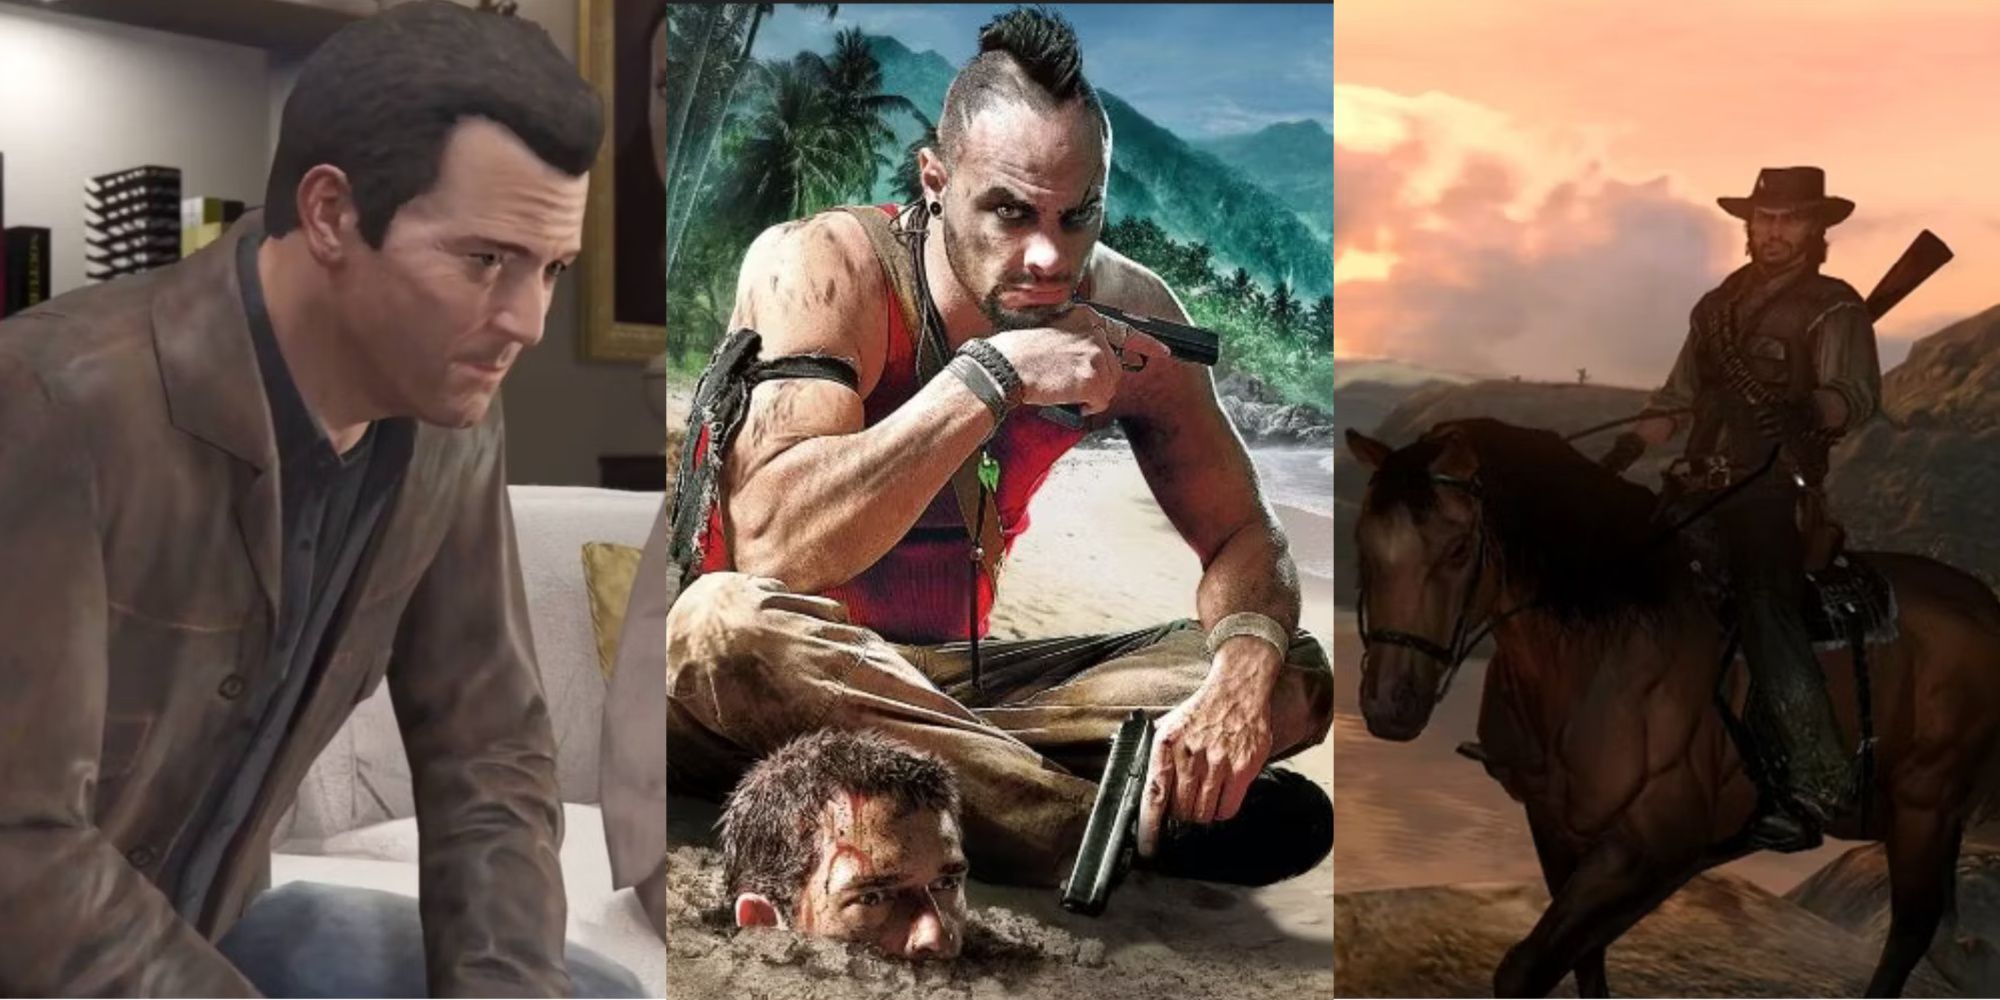 Michael GTA V, Vaas With Jason's Head Buried In Sand Far Cry 3, Arthur On Horseback Red Dead